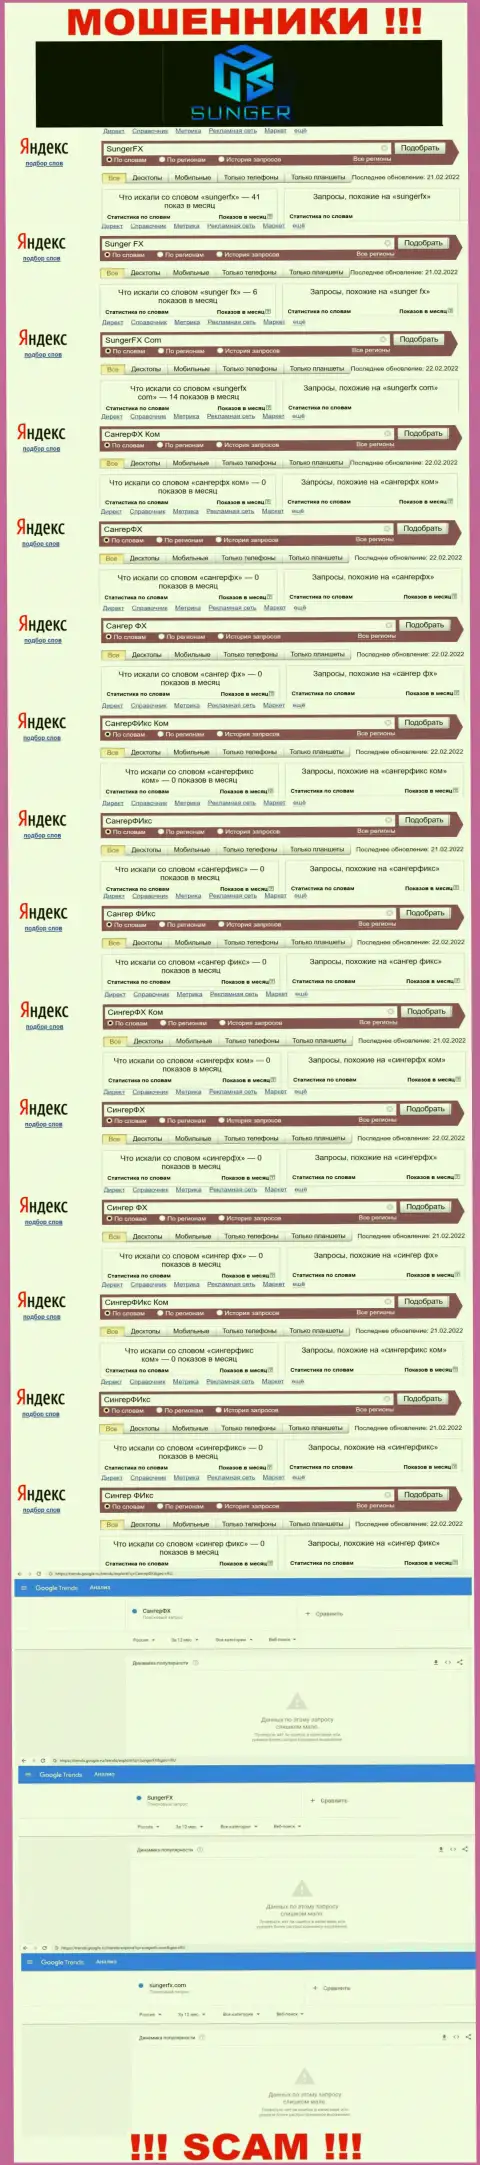 SungerFX - это ВОРЫ, сколько раз искали в поисковиках всемирной сети эту компанию